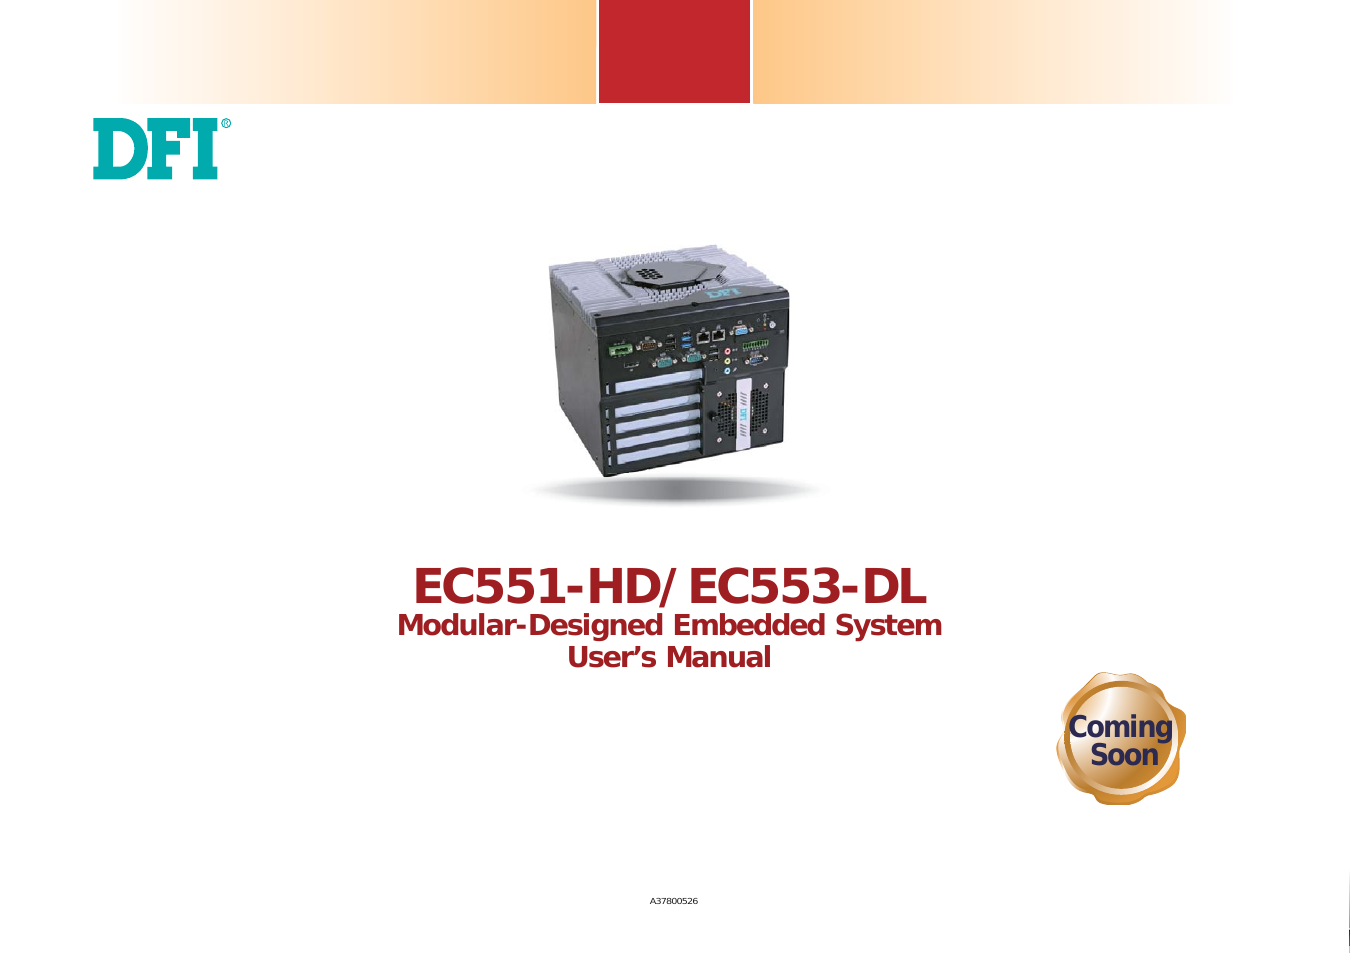 EC553-DL